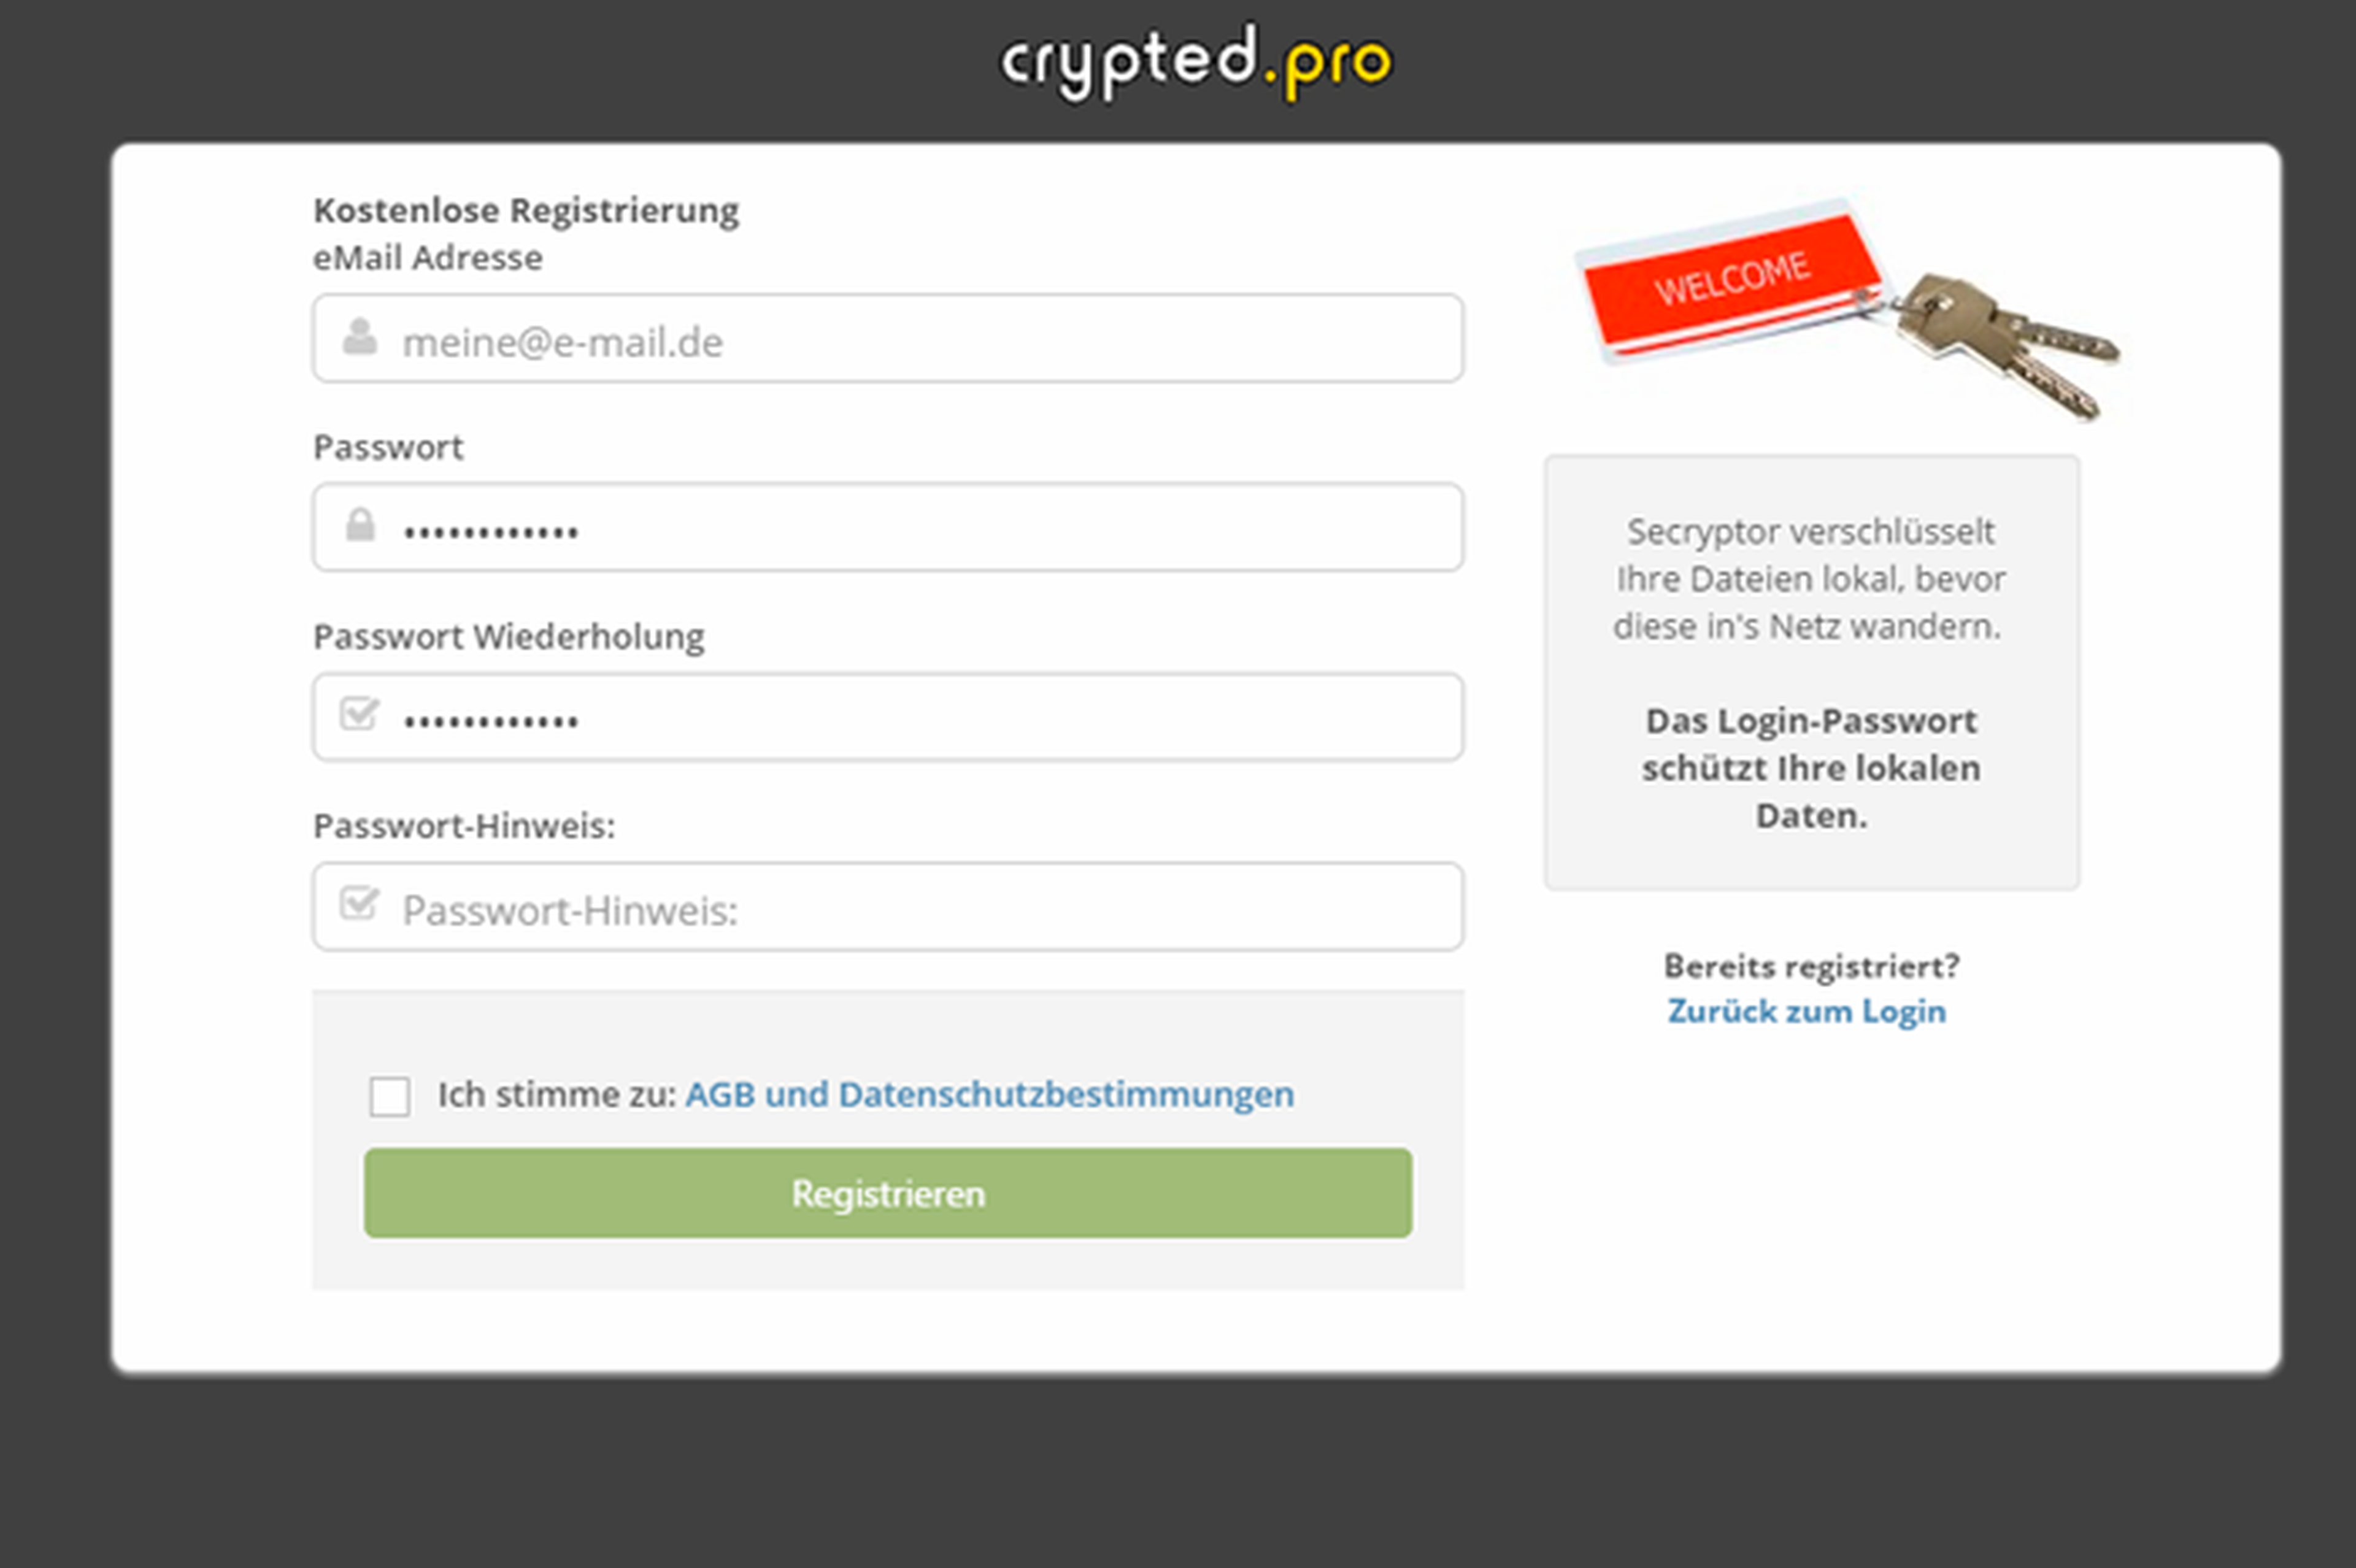 Primeros pasos con Crypted.pro